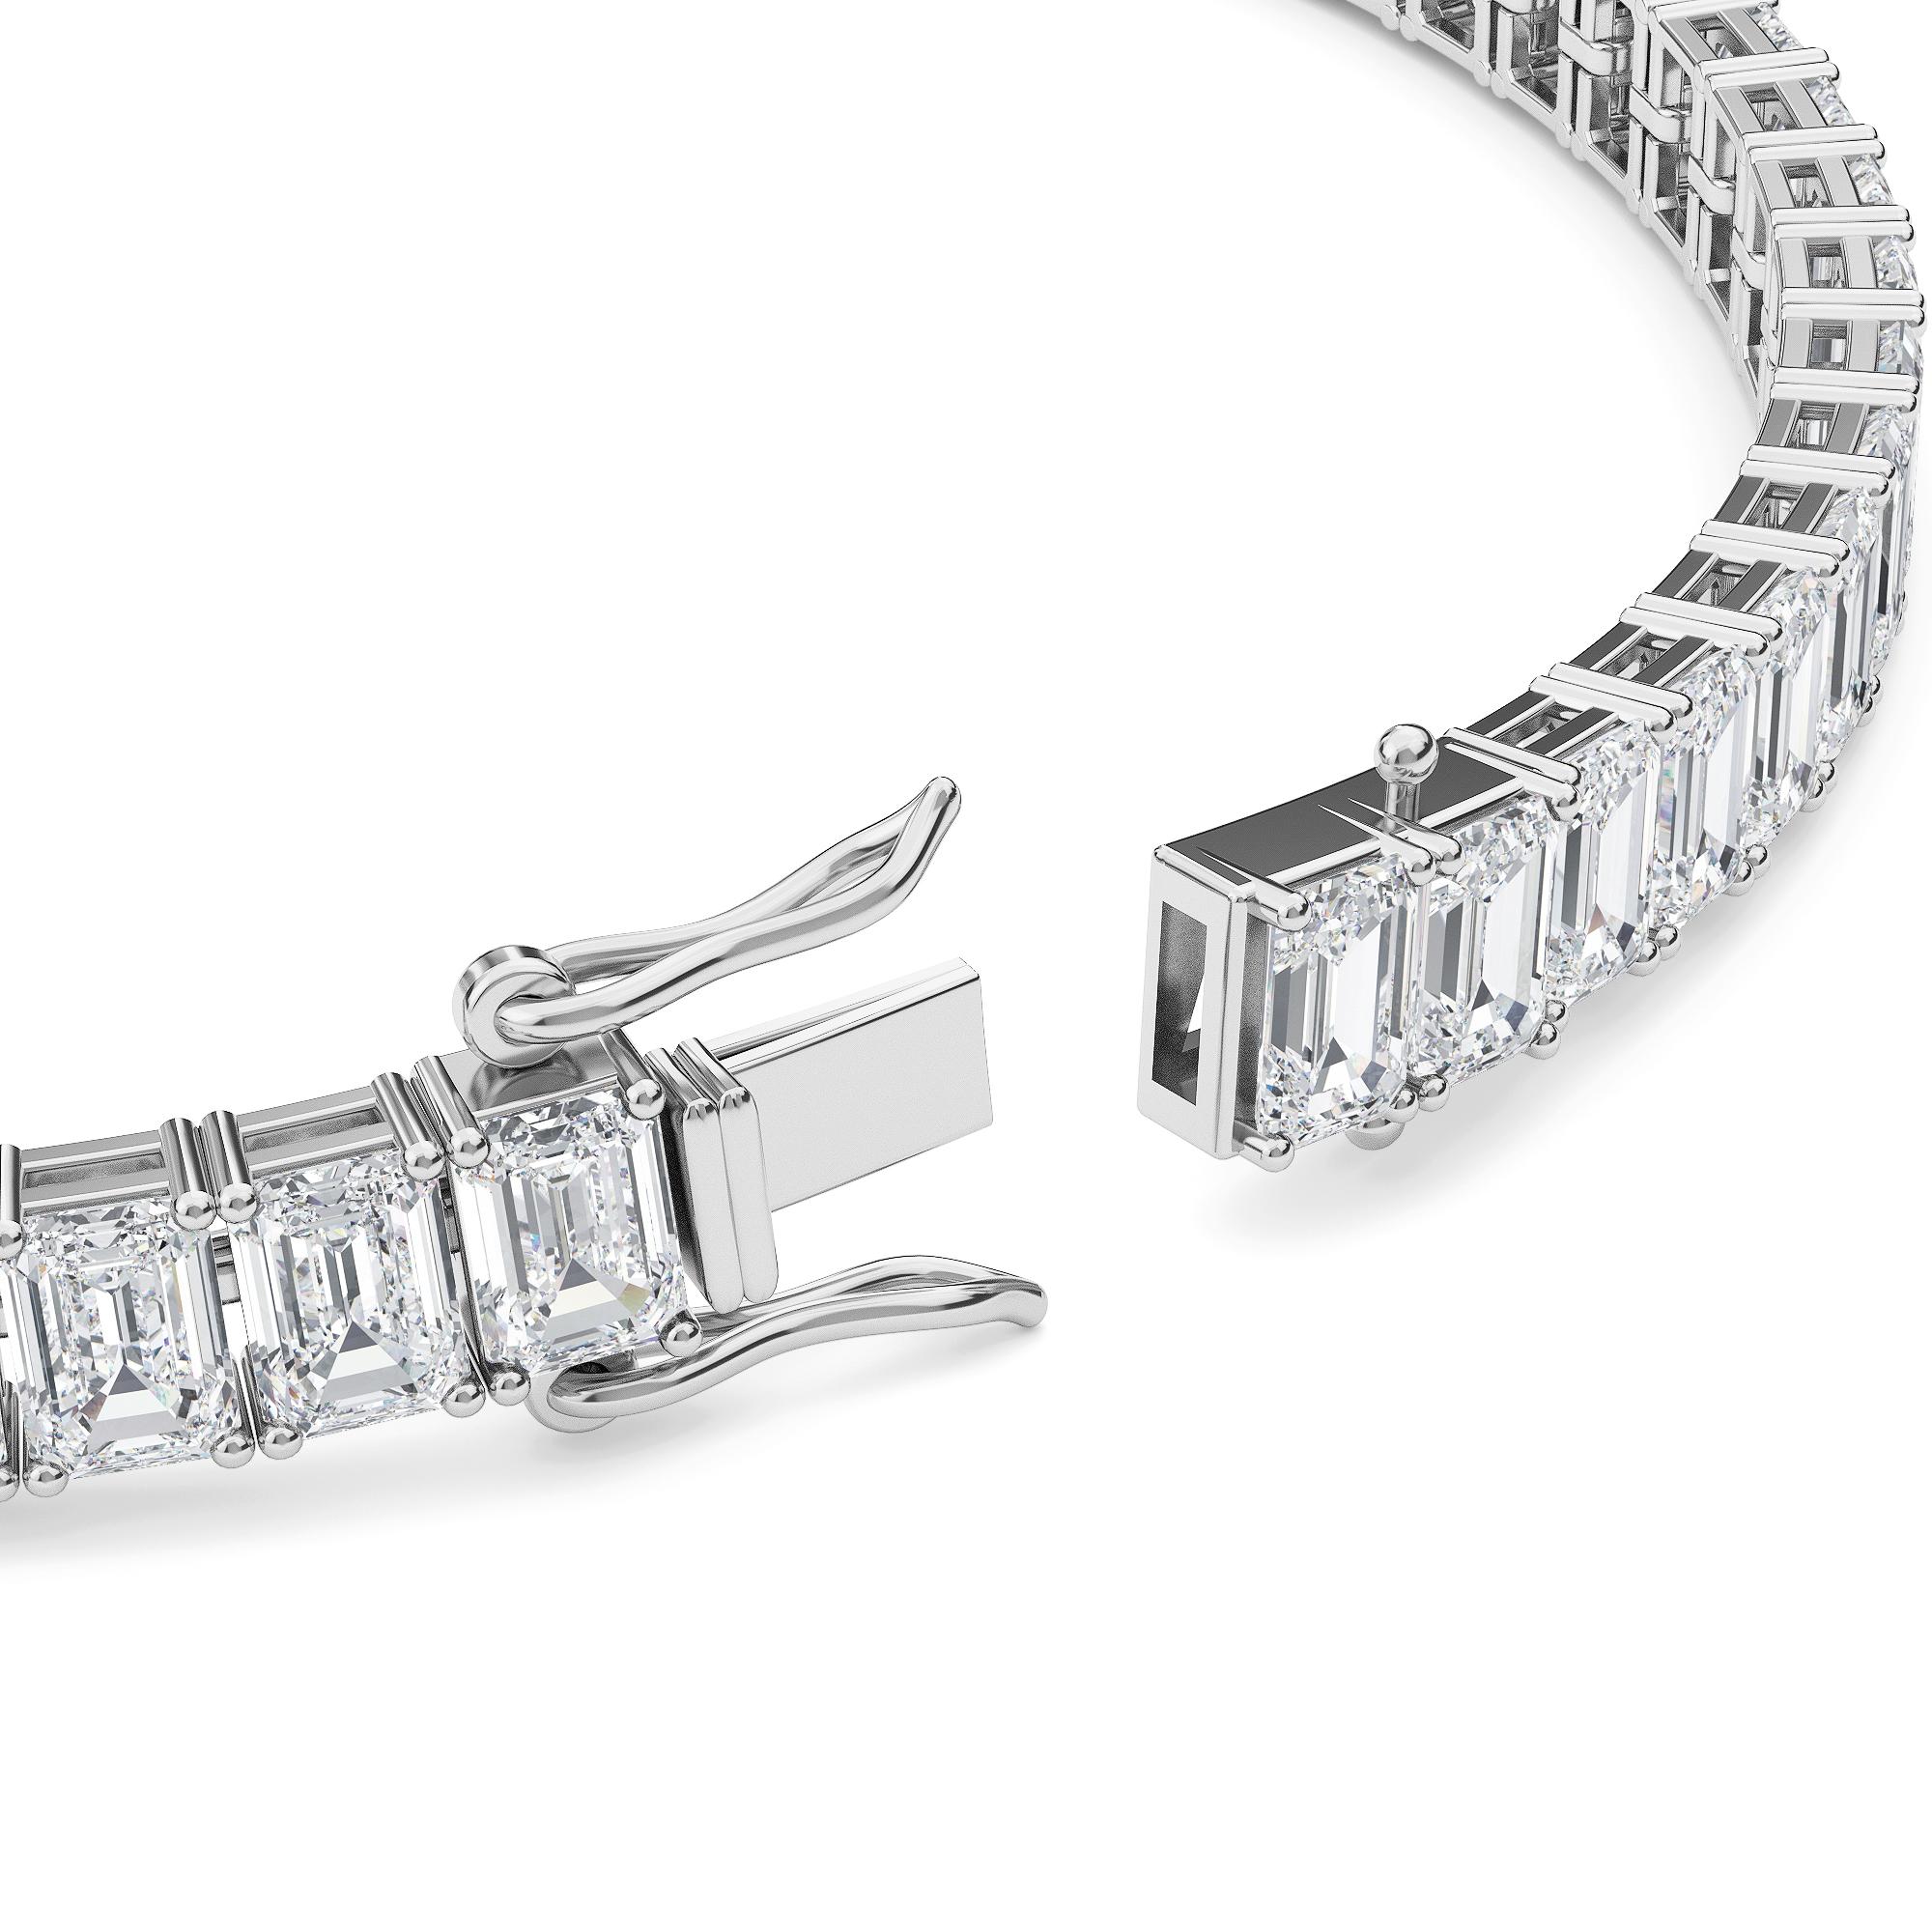 Élégant et splendide, ce bracelet au design attrayant est composé de quatre diamants taille émeraude sertis à la broche. Se ferme à l'aide d'un fermoir sécurisé.

